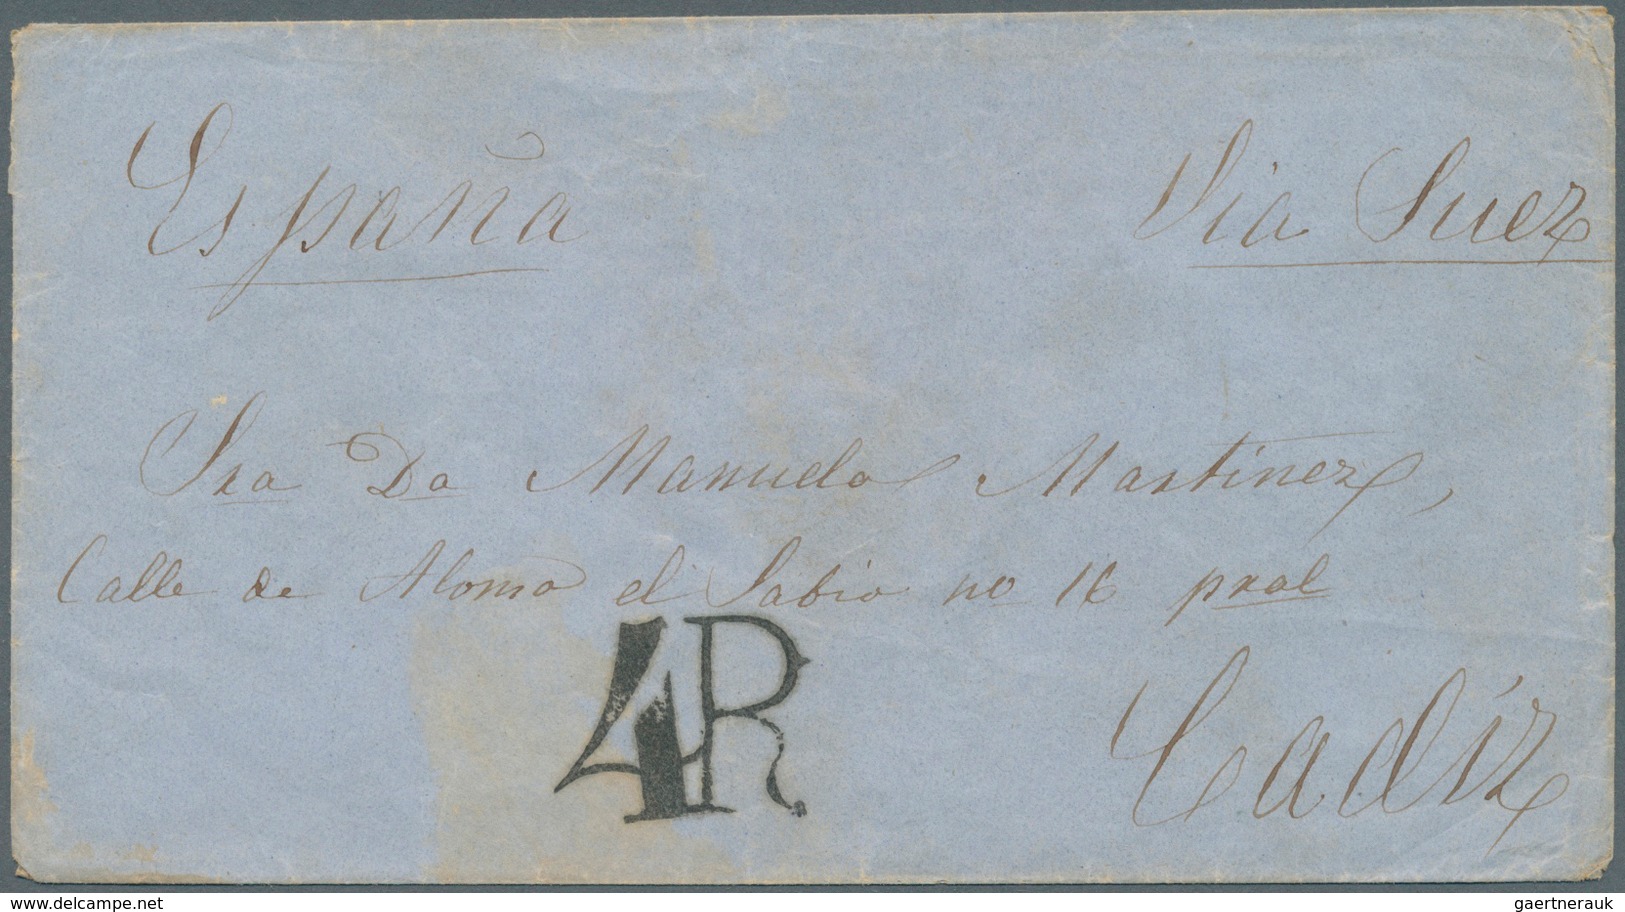 Philippinen: 1860, Cover Endorsed "4R" And "Espana / Via Suez" To Cadiz W. "SAN ROQUE 28 MAR 60" And - Philippinen